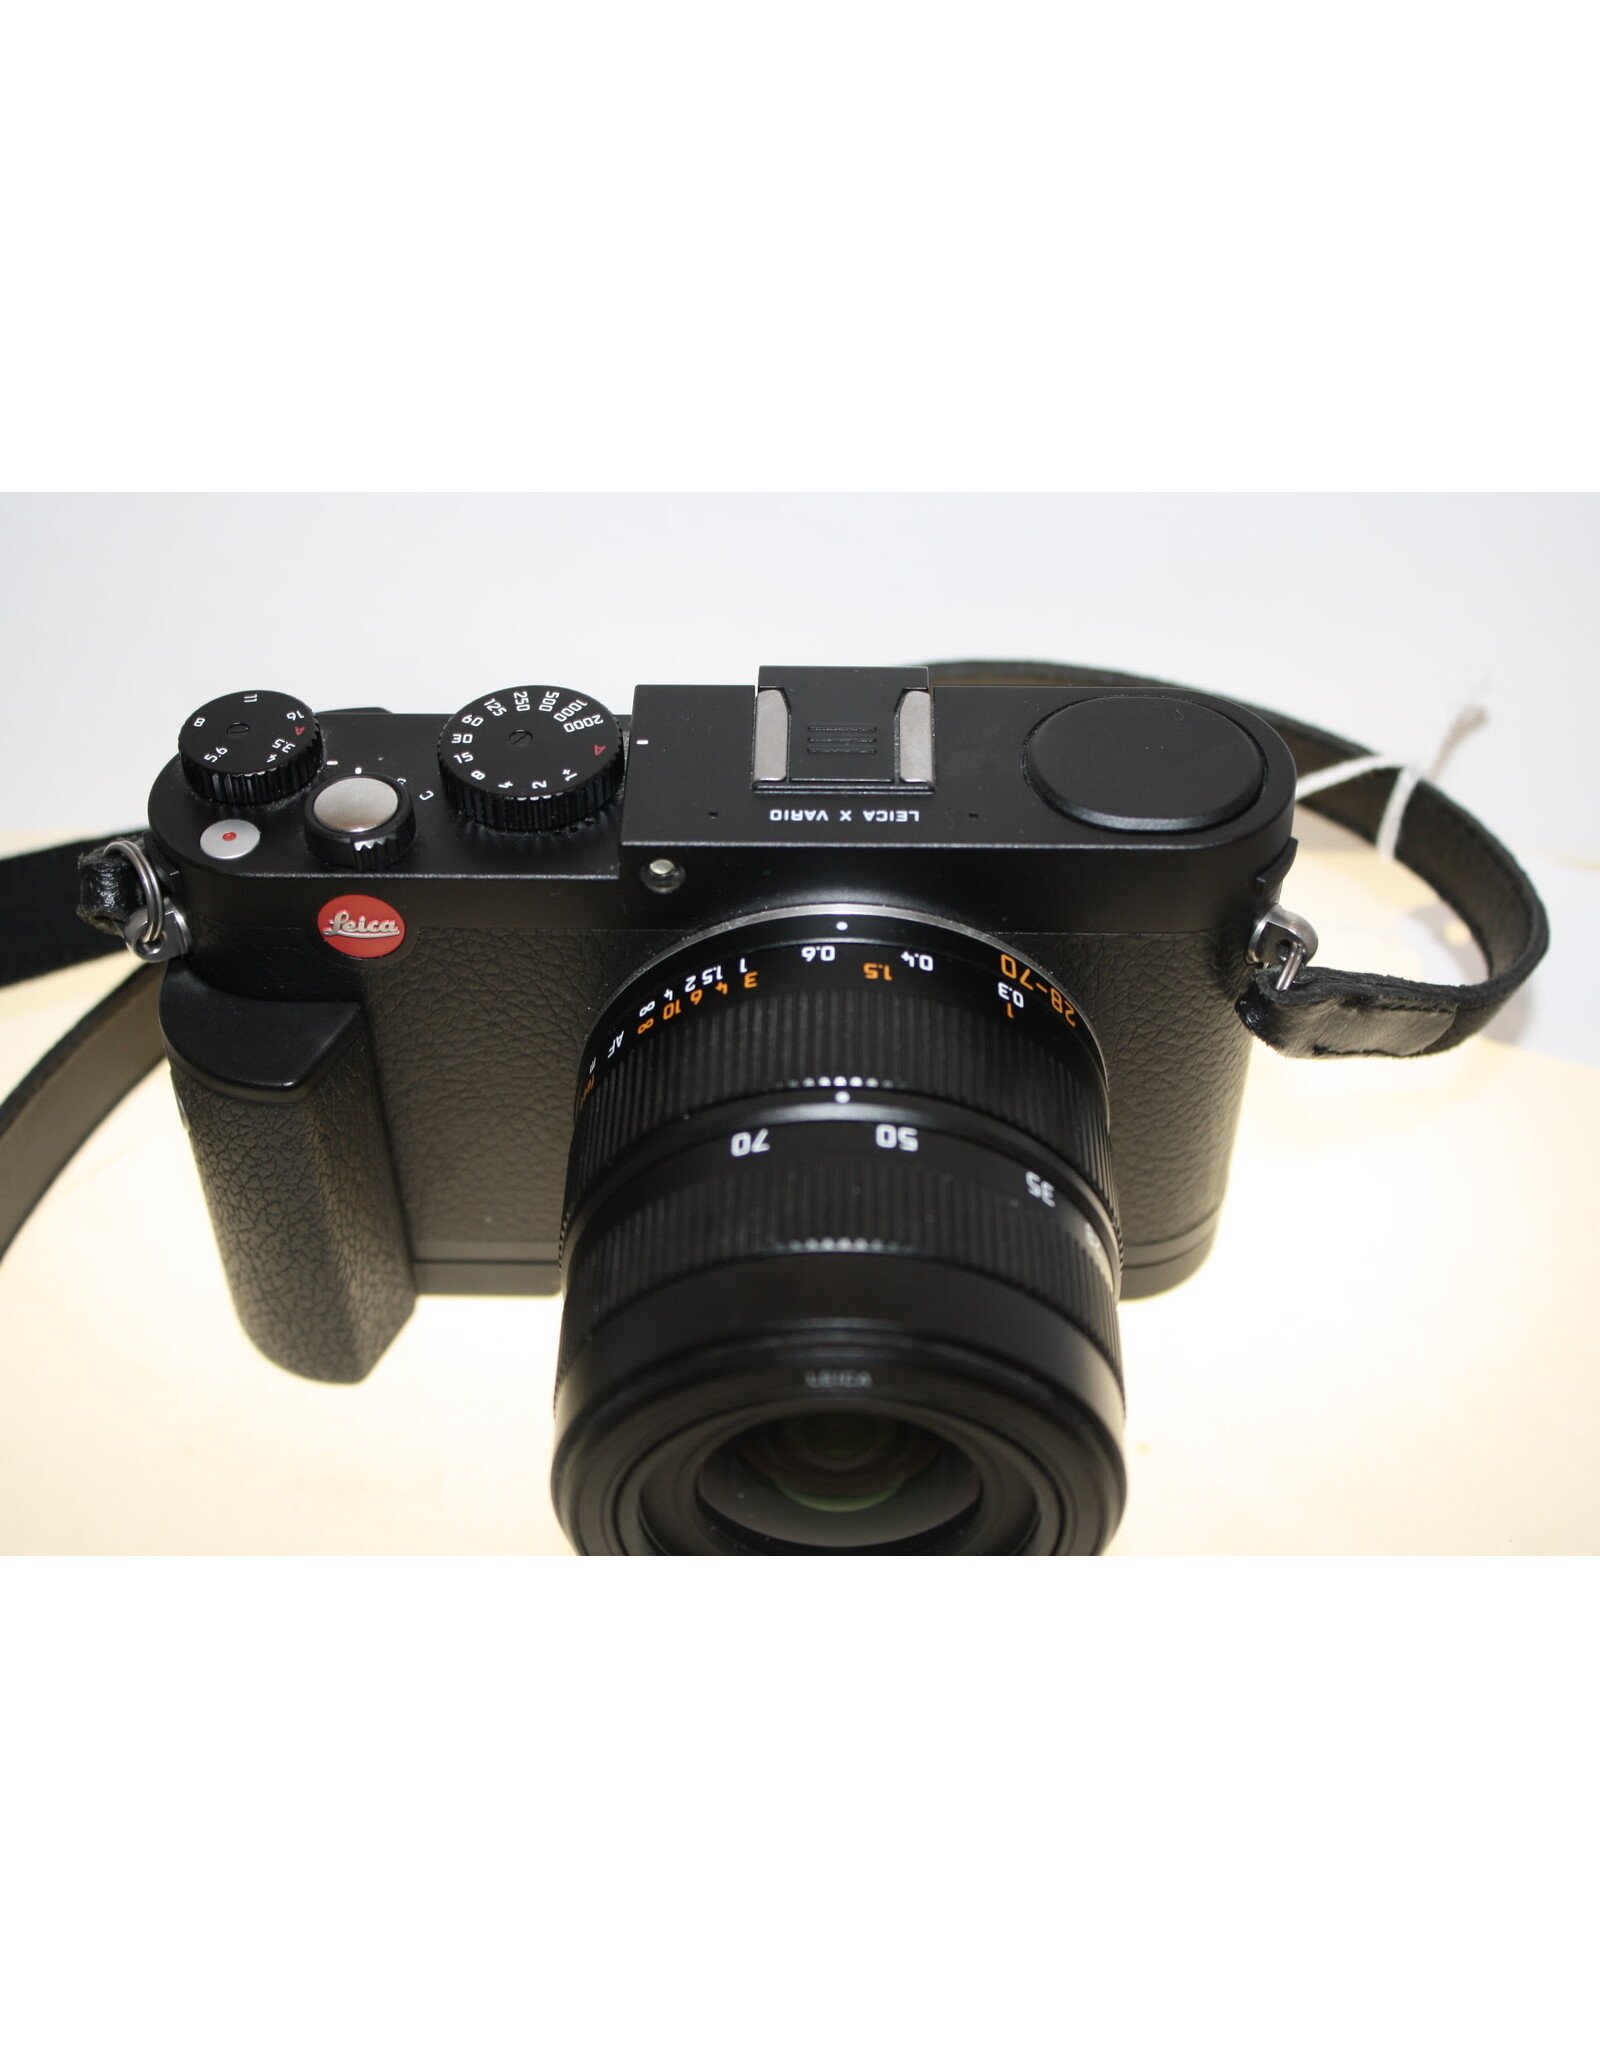 Leica X Vario Compact Digital Camera w/ Vario Elmar 28-70 mm f/3.5 